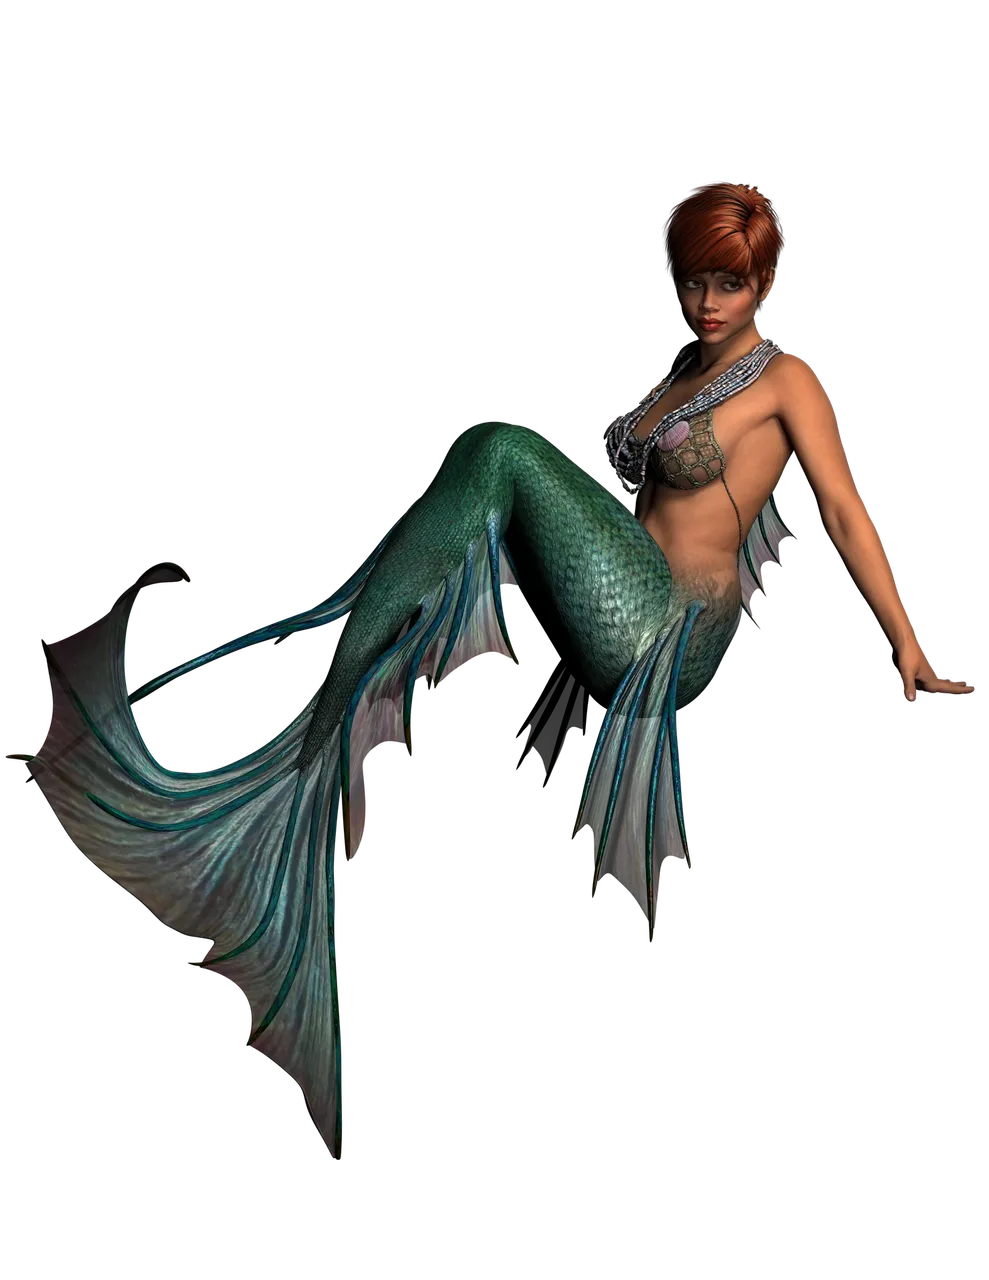 mermaid-1134891_1920.png